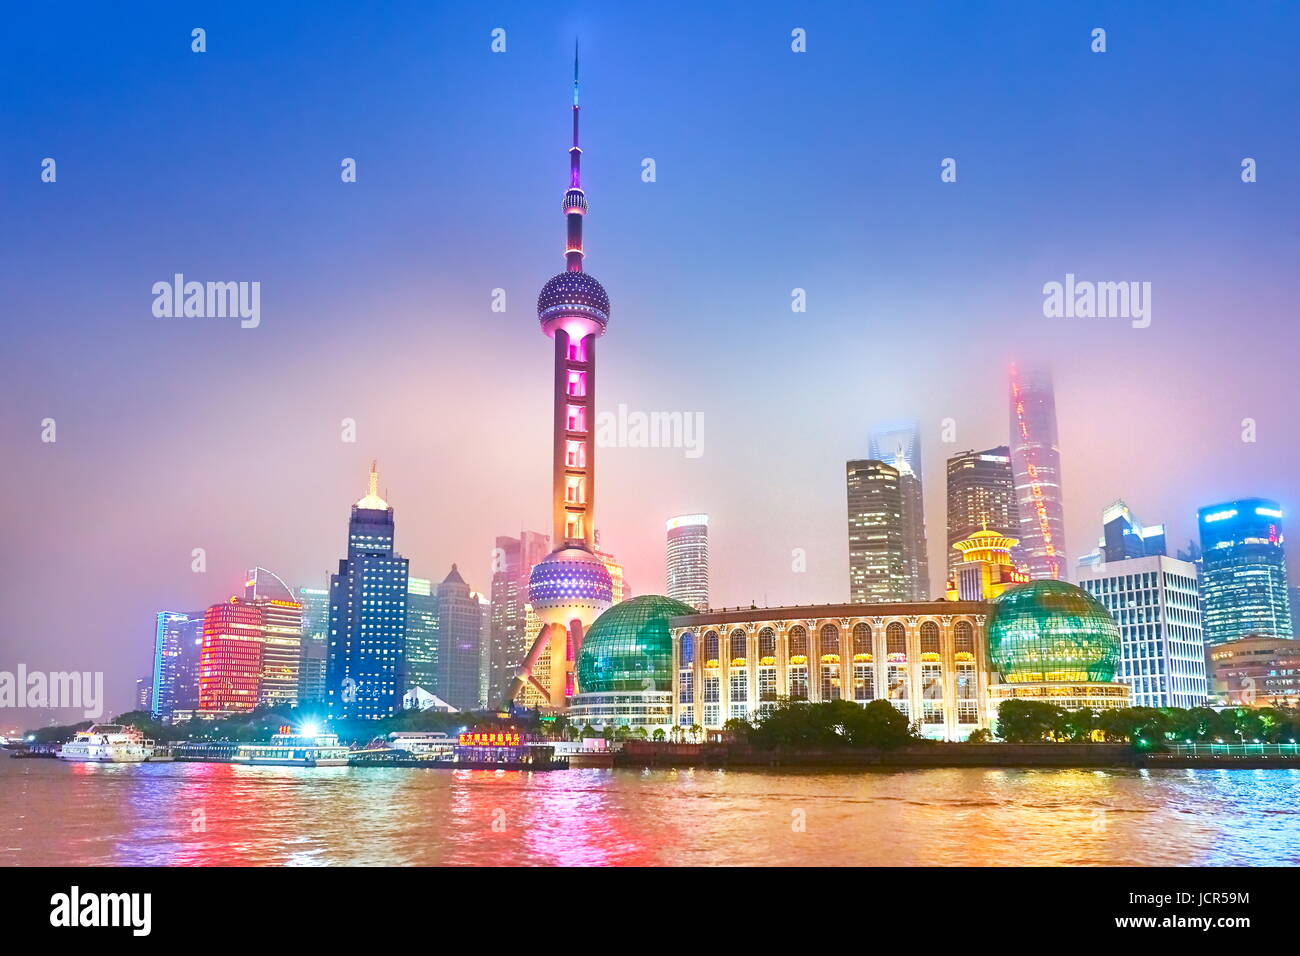 Perla y el distrito financiero skyline en el río Huangpu, Shanghai, China Foto de stock